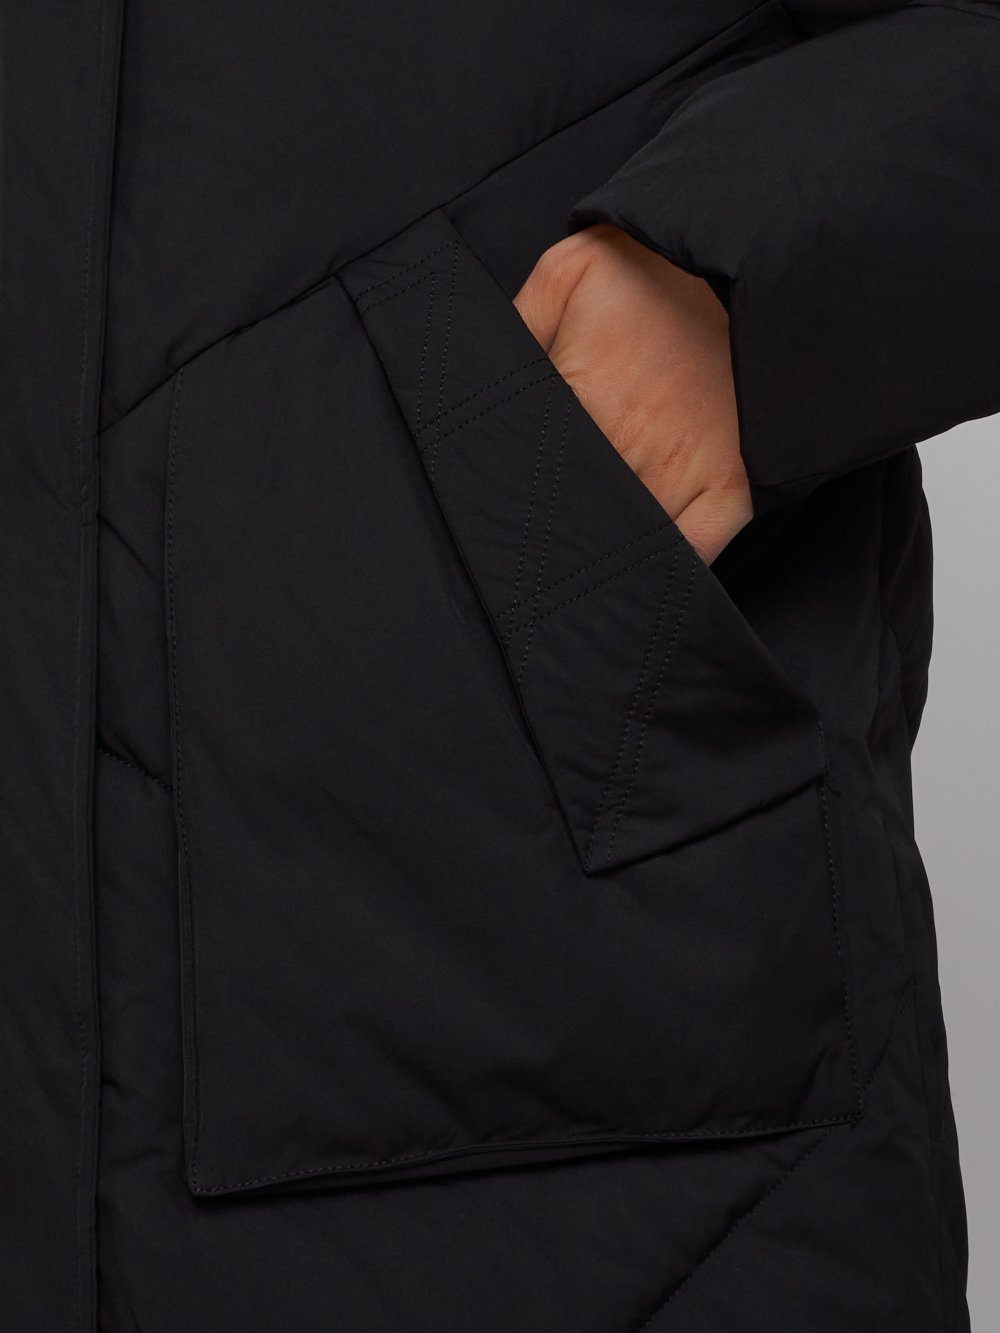 Купить куртку женскую оптом от производителя недорого в Москве 52362Ch 1